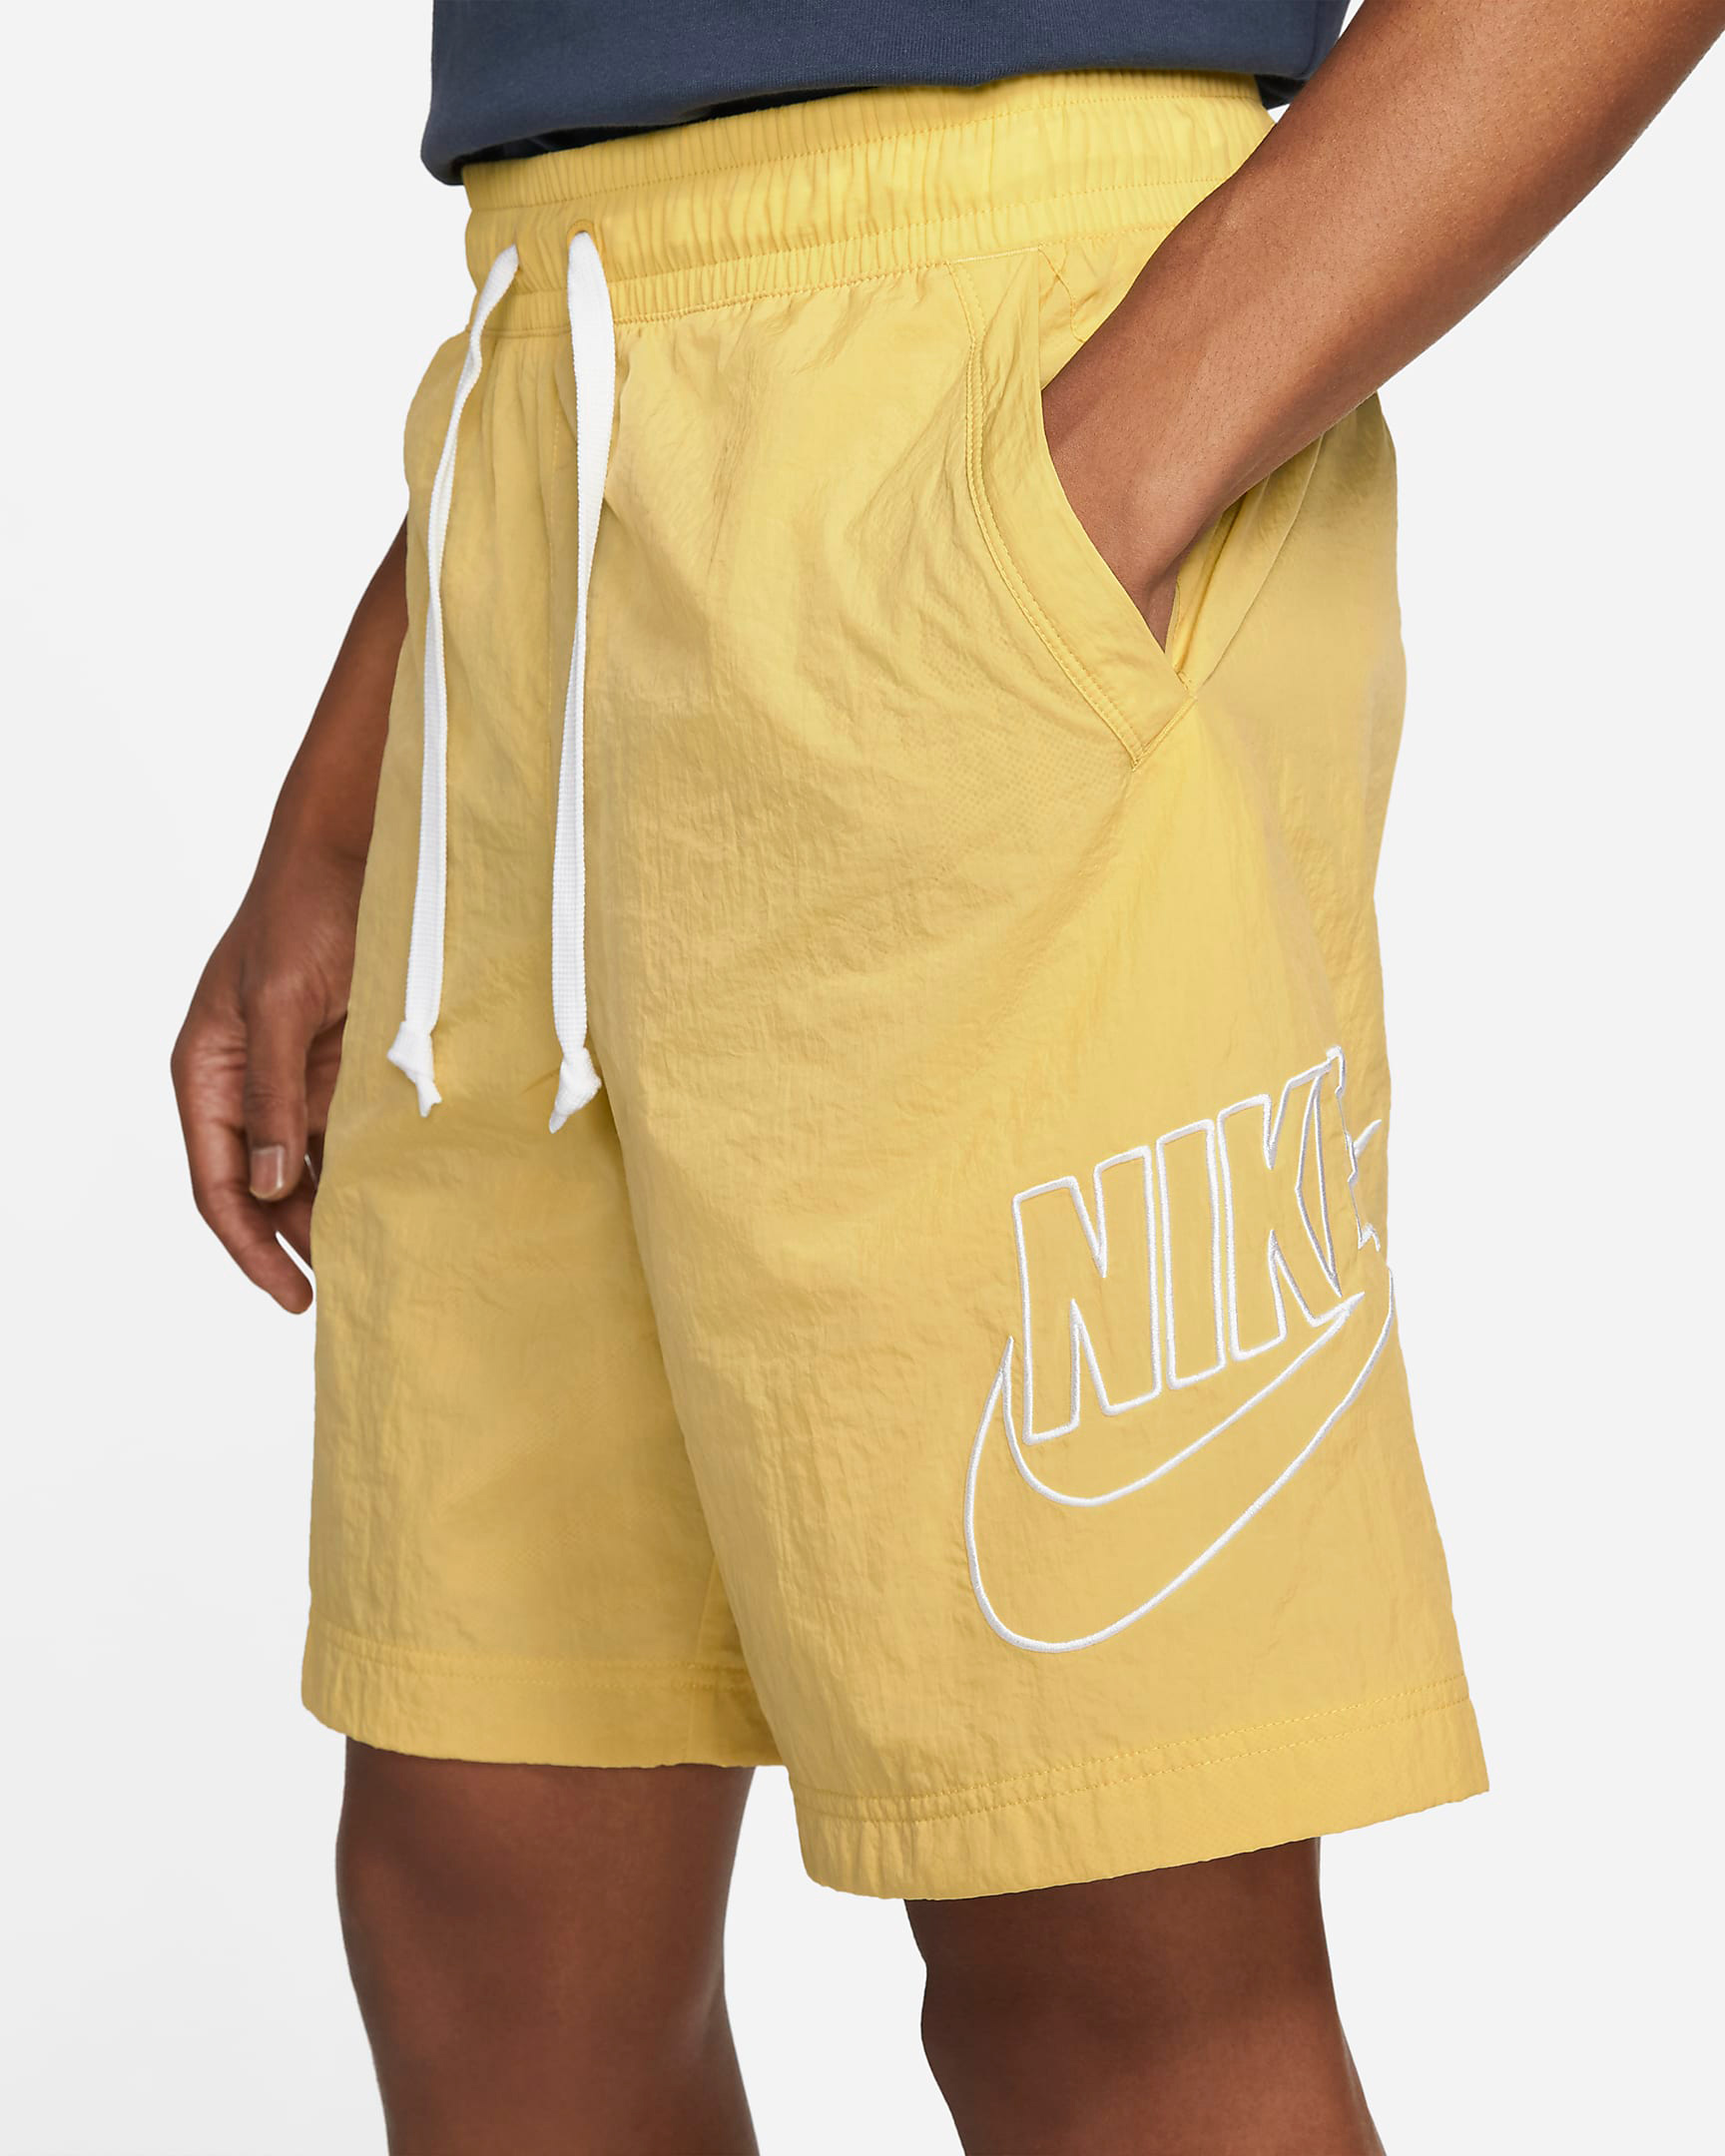 nike-saturn-gold-alumni-woven-shorts-2